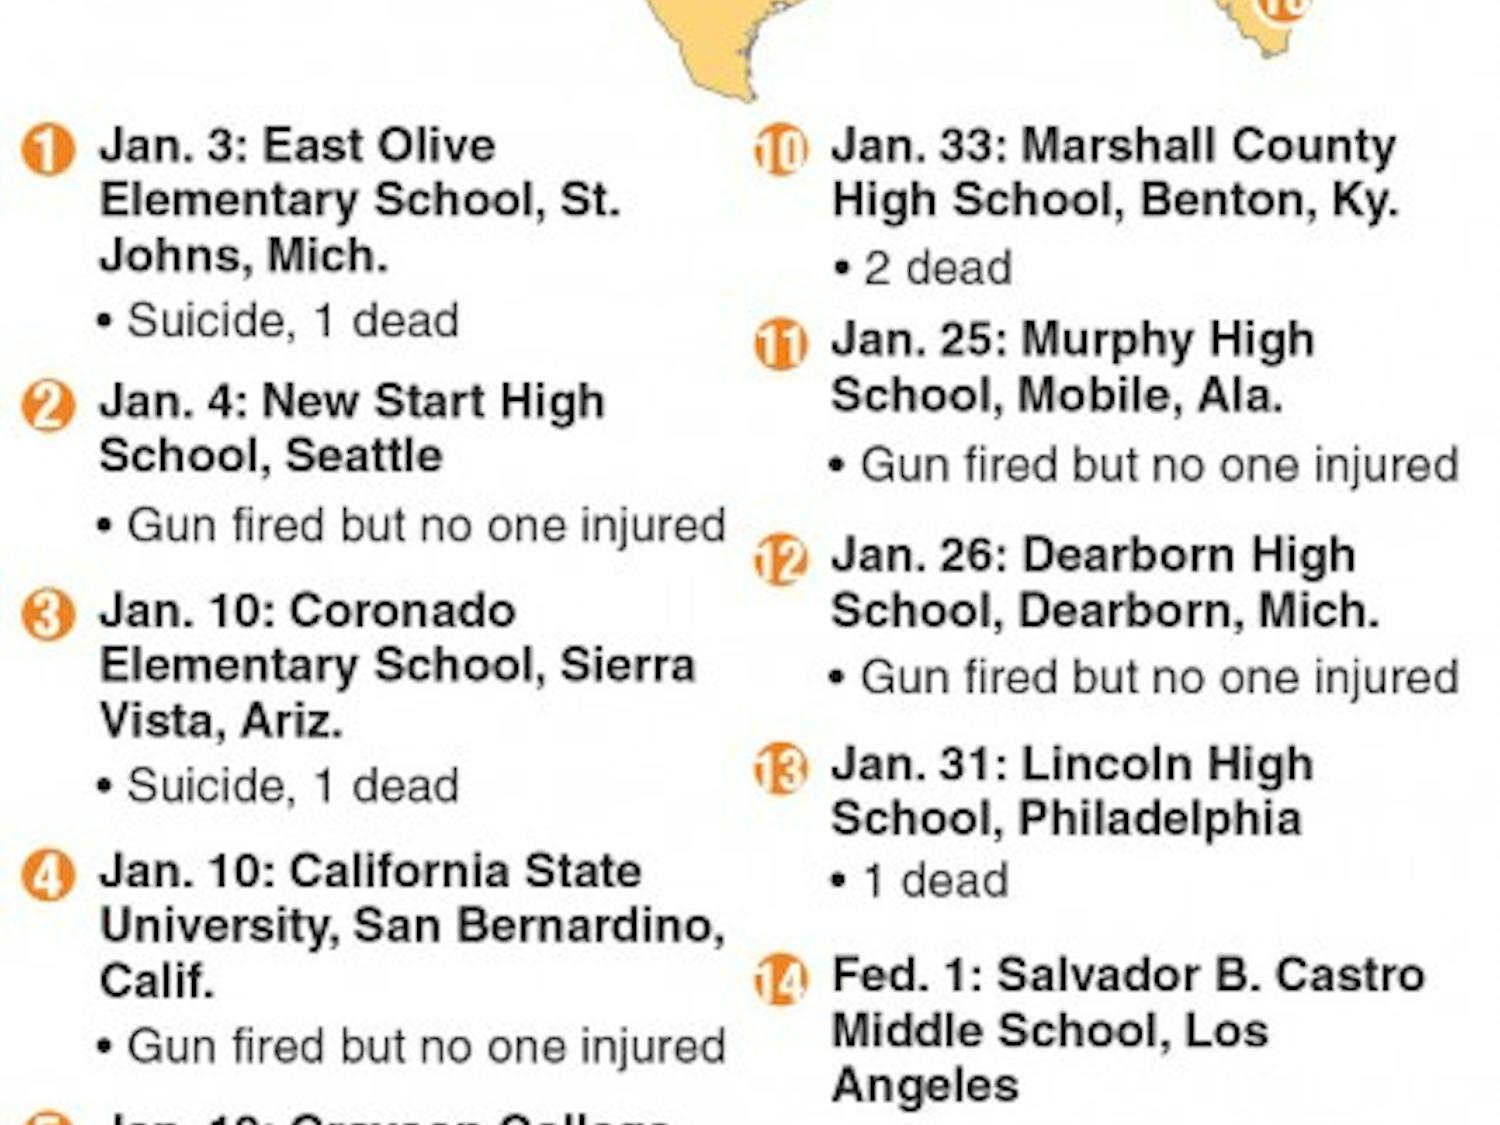 School shootings in 2018